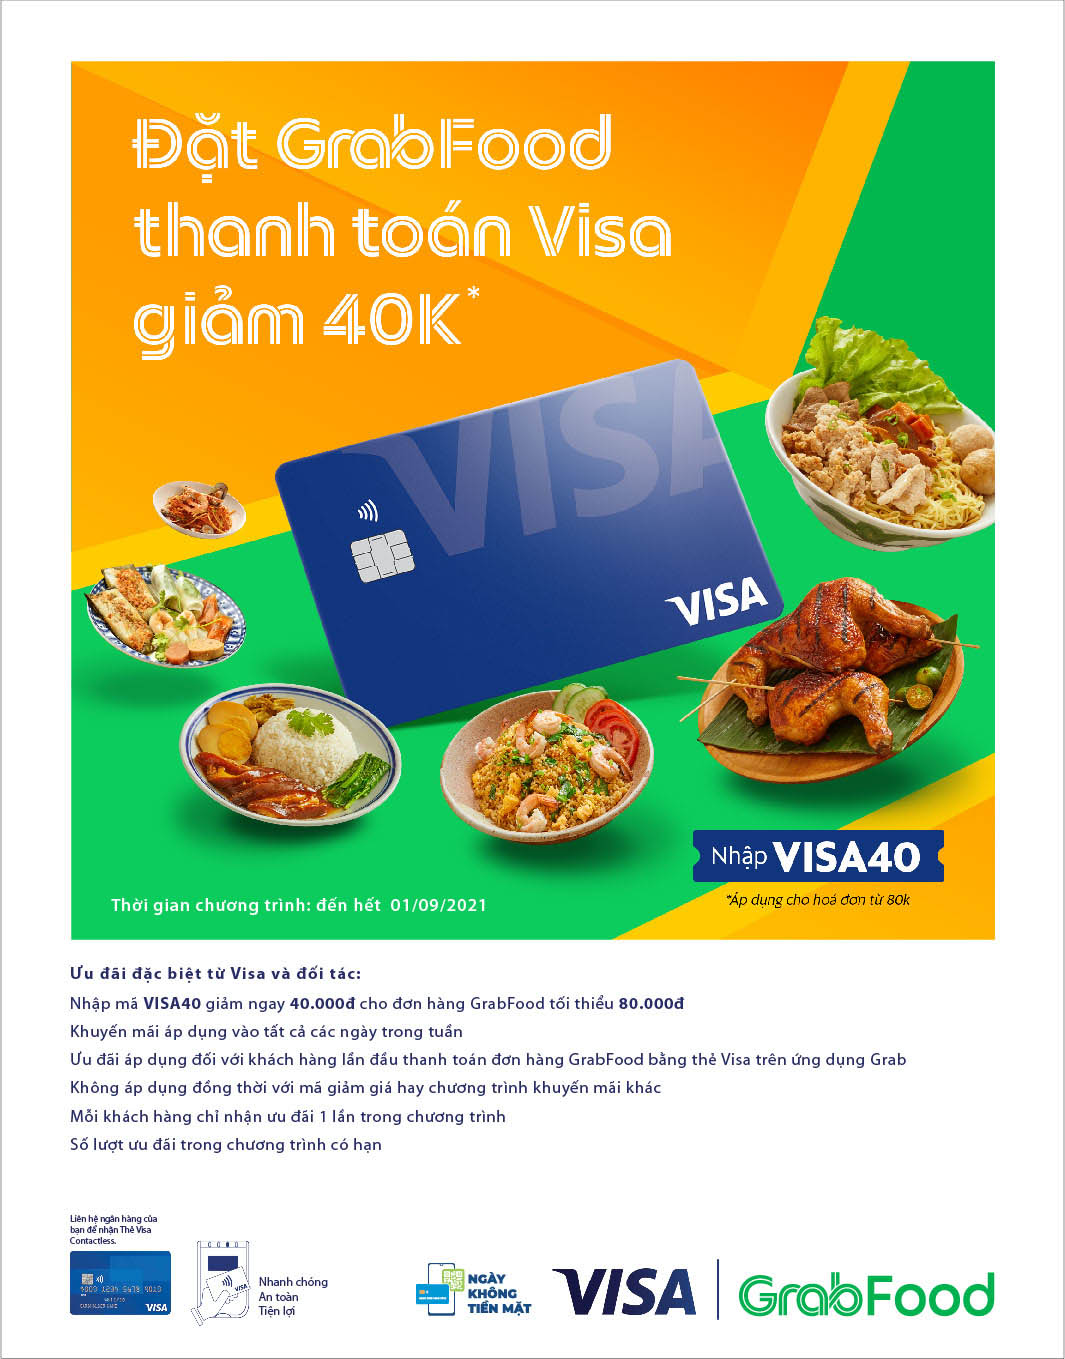 Visa hợp tác cùng Moca thúc đẩy mua sắm trực tuyến và thanh toán số